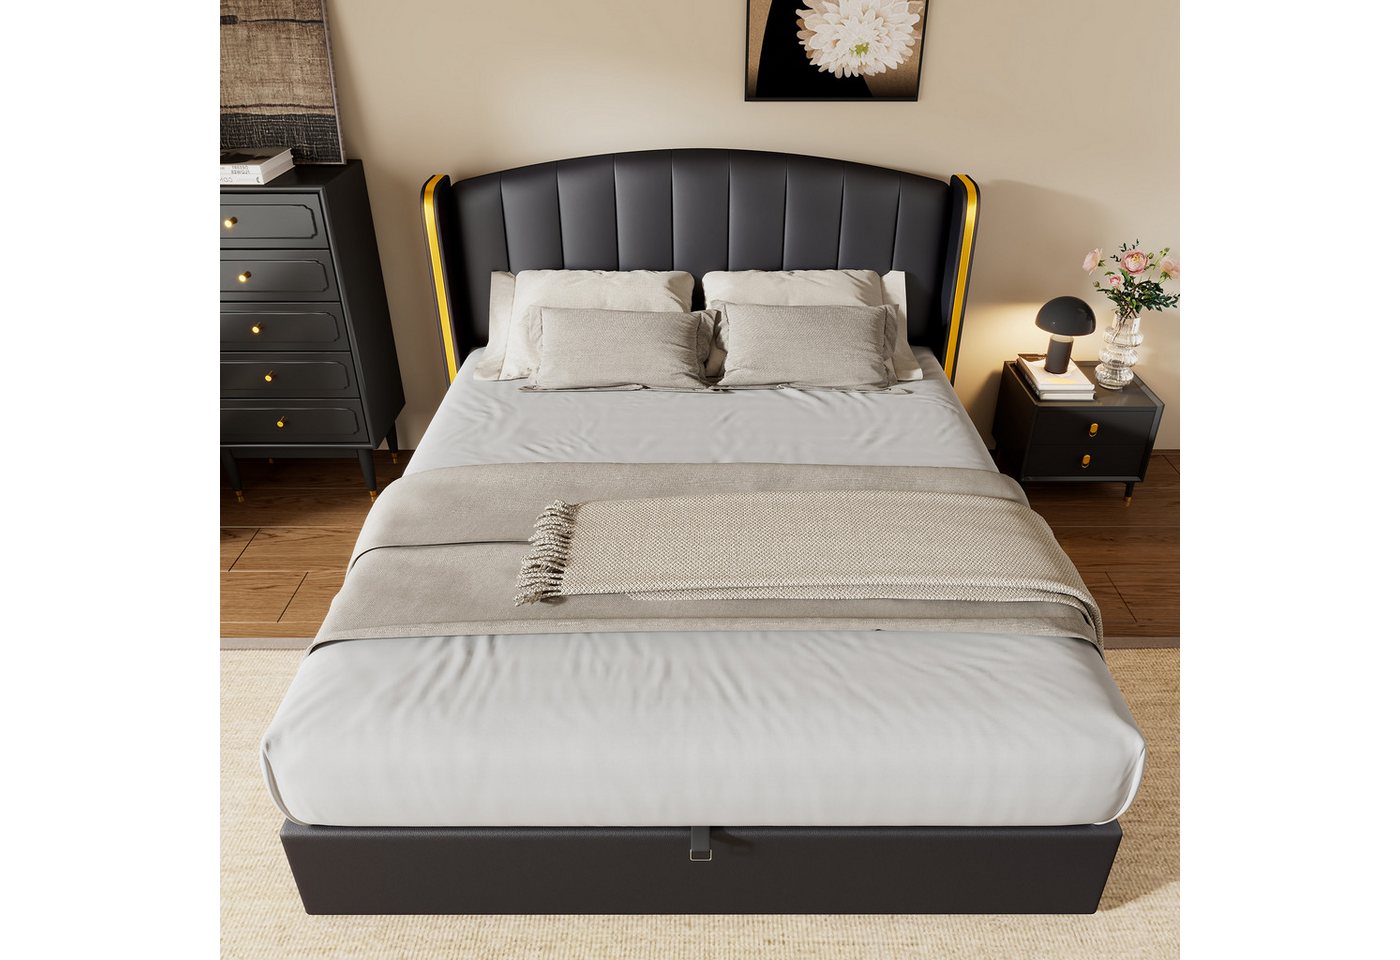 OKWISH Polsterbett Hydraulisches Bett (180*200cm), mit goldgerandetes Ohrendesign, Bettkasten, Lattenrost und Kopfteil von OKWISH